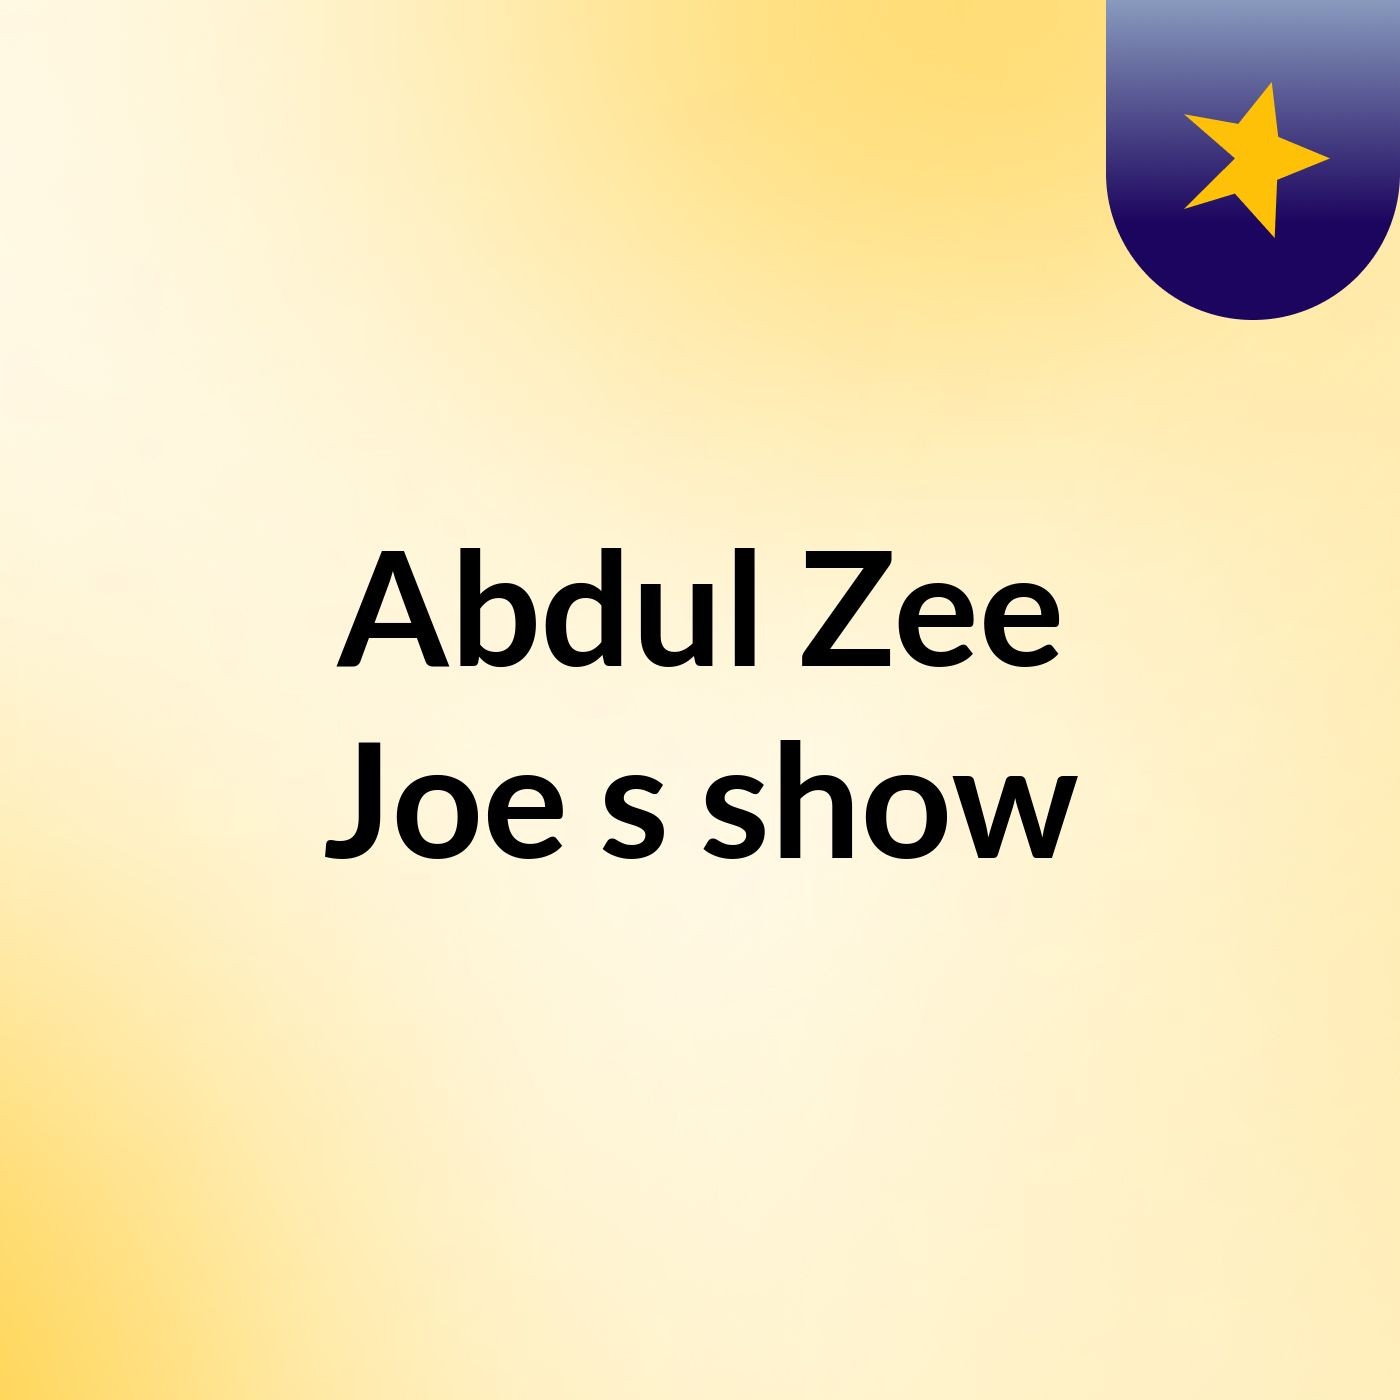 Episode 2 - Abdul Zee Joe's show